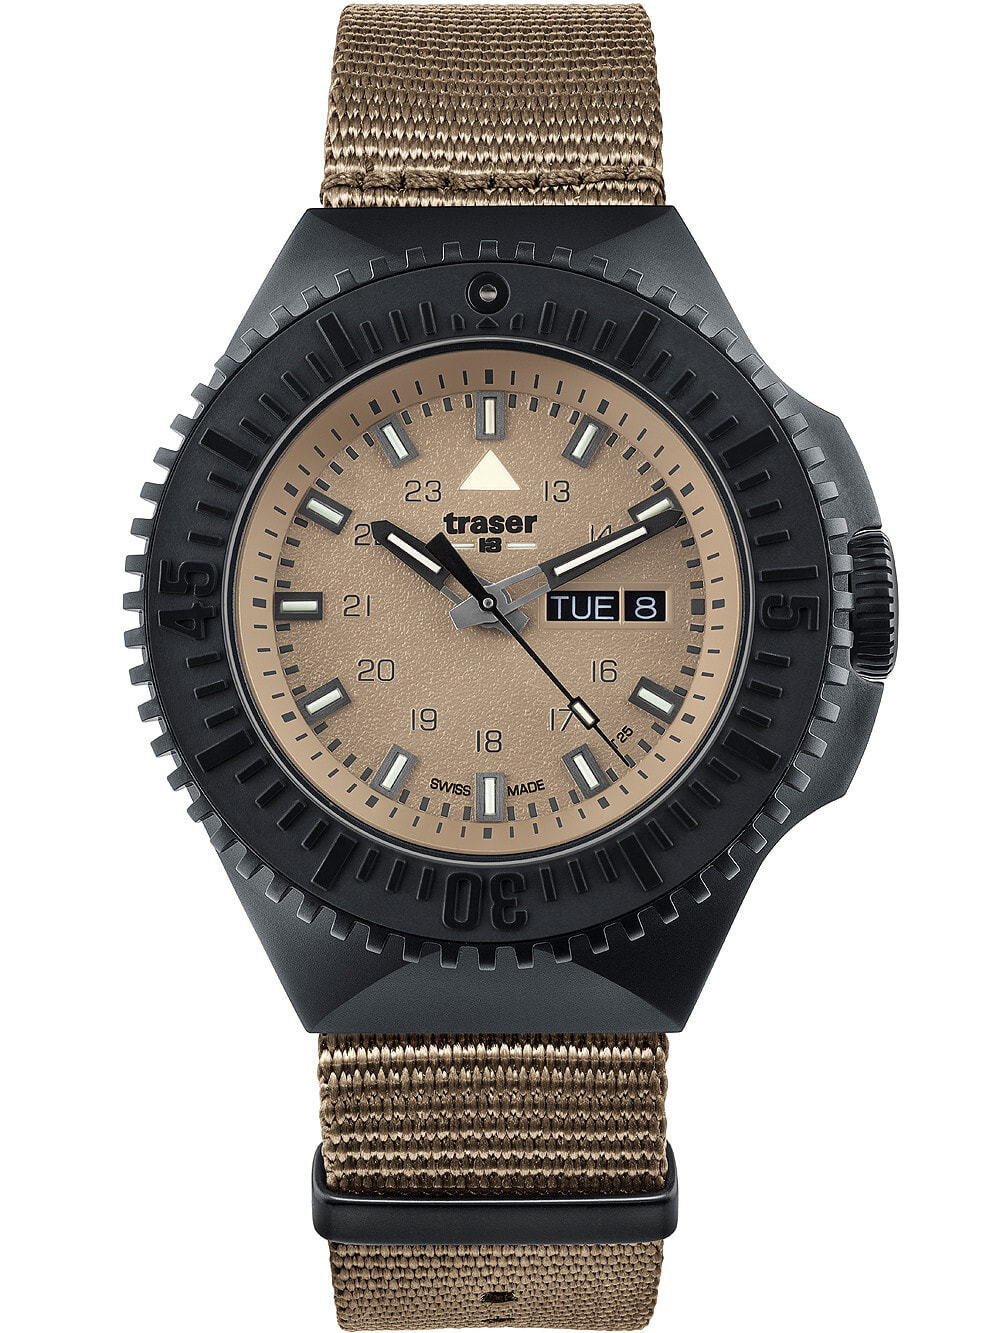 Мужские наручные часы с зеленым текстильным ремешком Traser H3 109860 P69 Black-Stealth Sand 46mm 20ATM